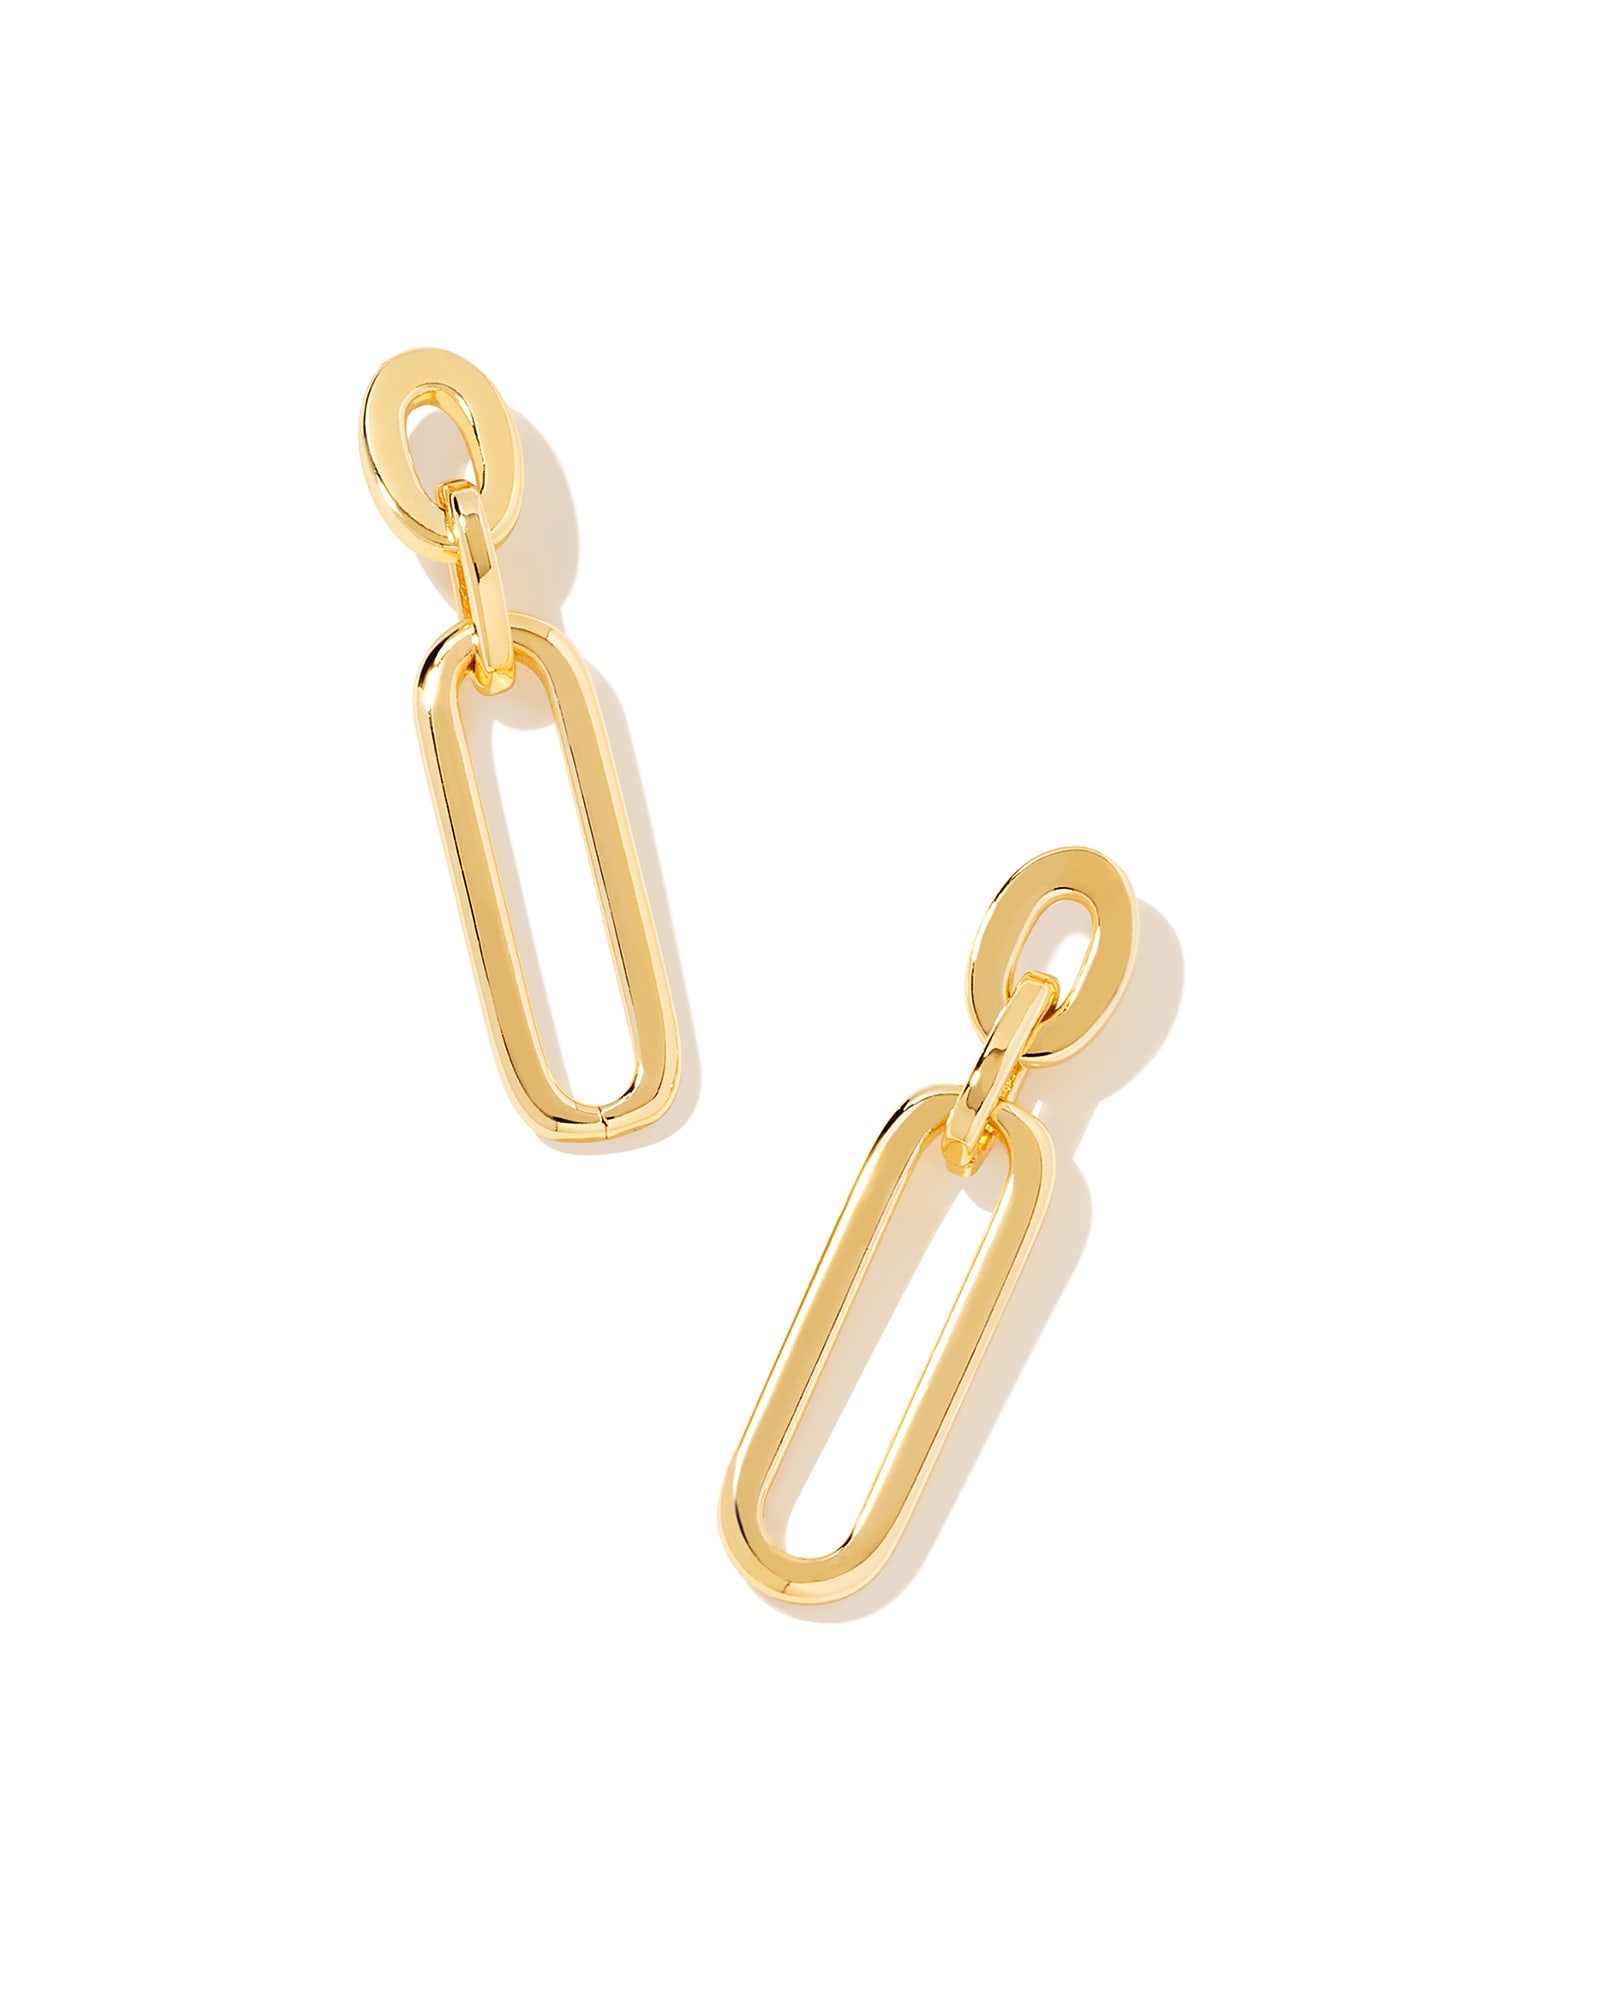 Heather Linear Earrings in Gold | Kendra Scott